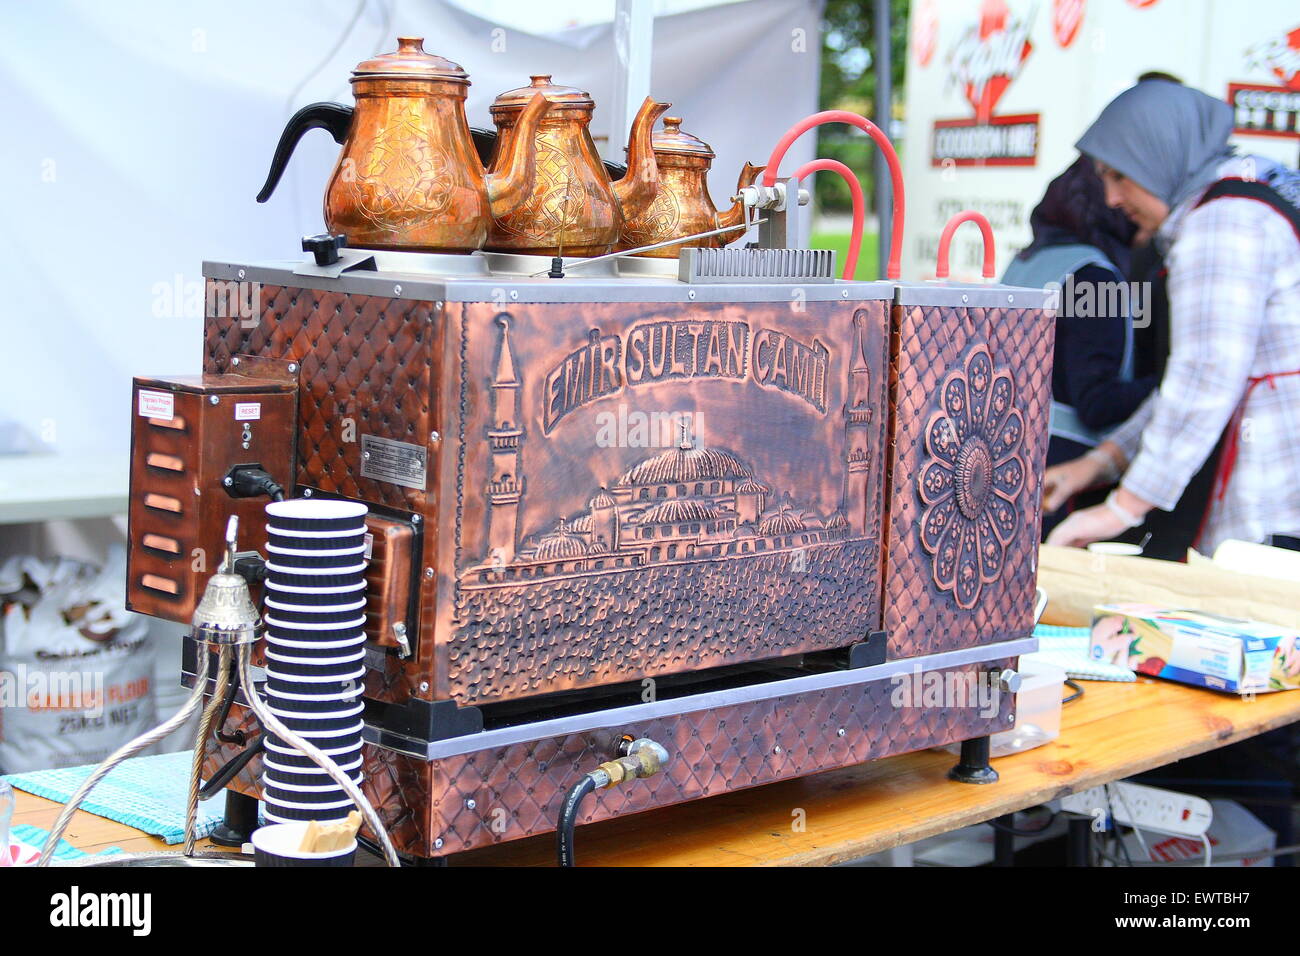 Machine à café turc traditionnel sur l'affichage à l'Eid Festival à Melbourne, Victoria Australie Dandenong Banque D'Images